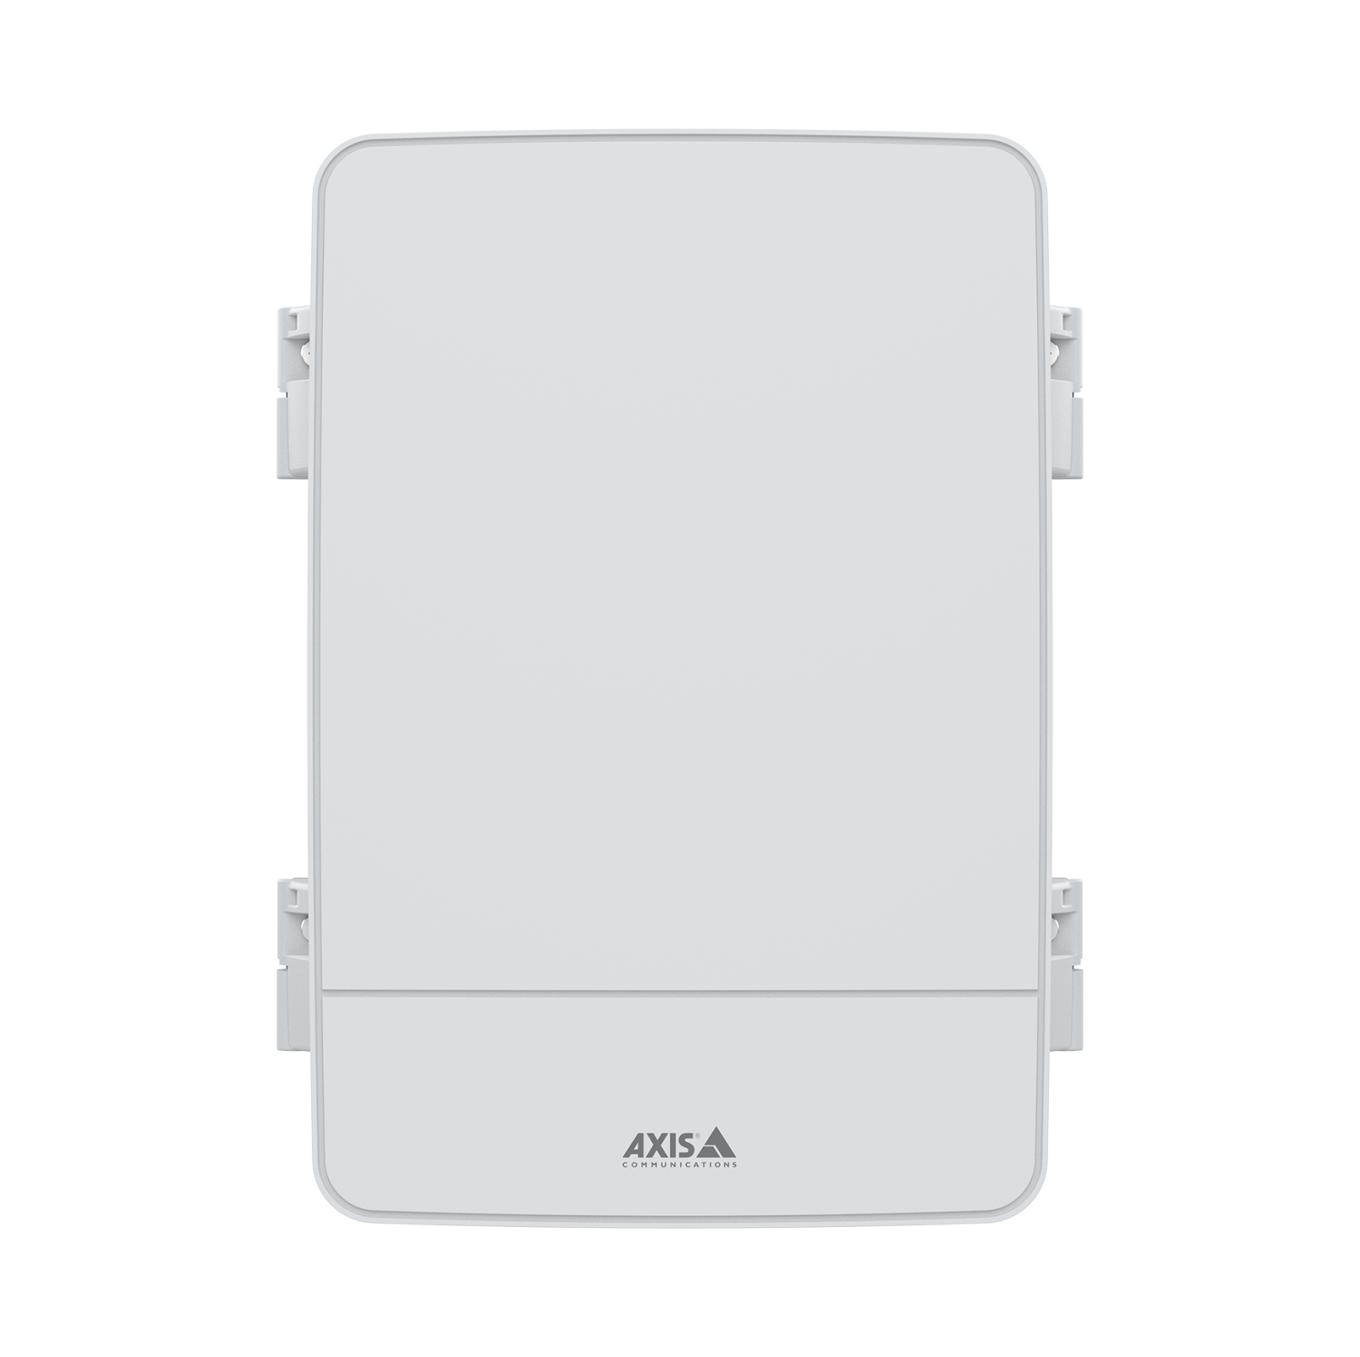 AXIS A12 Network Door Controller Series: AXIS A1214 Network Door Controller Kit